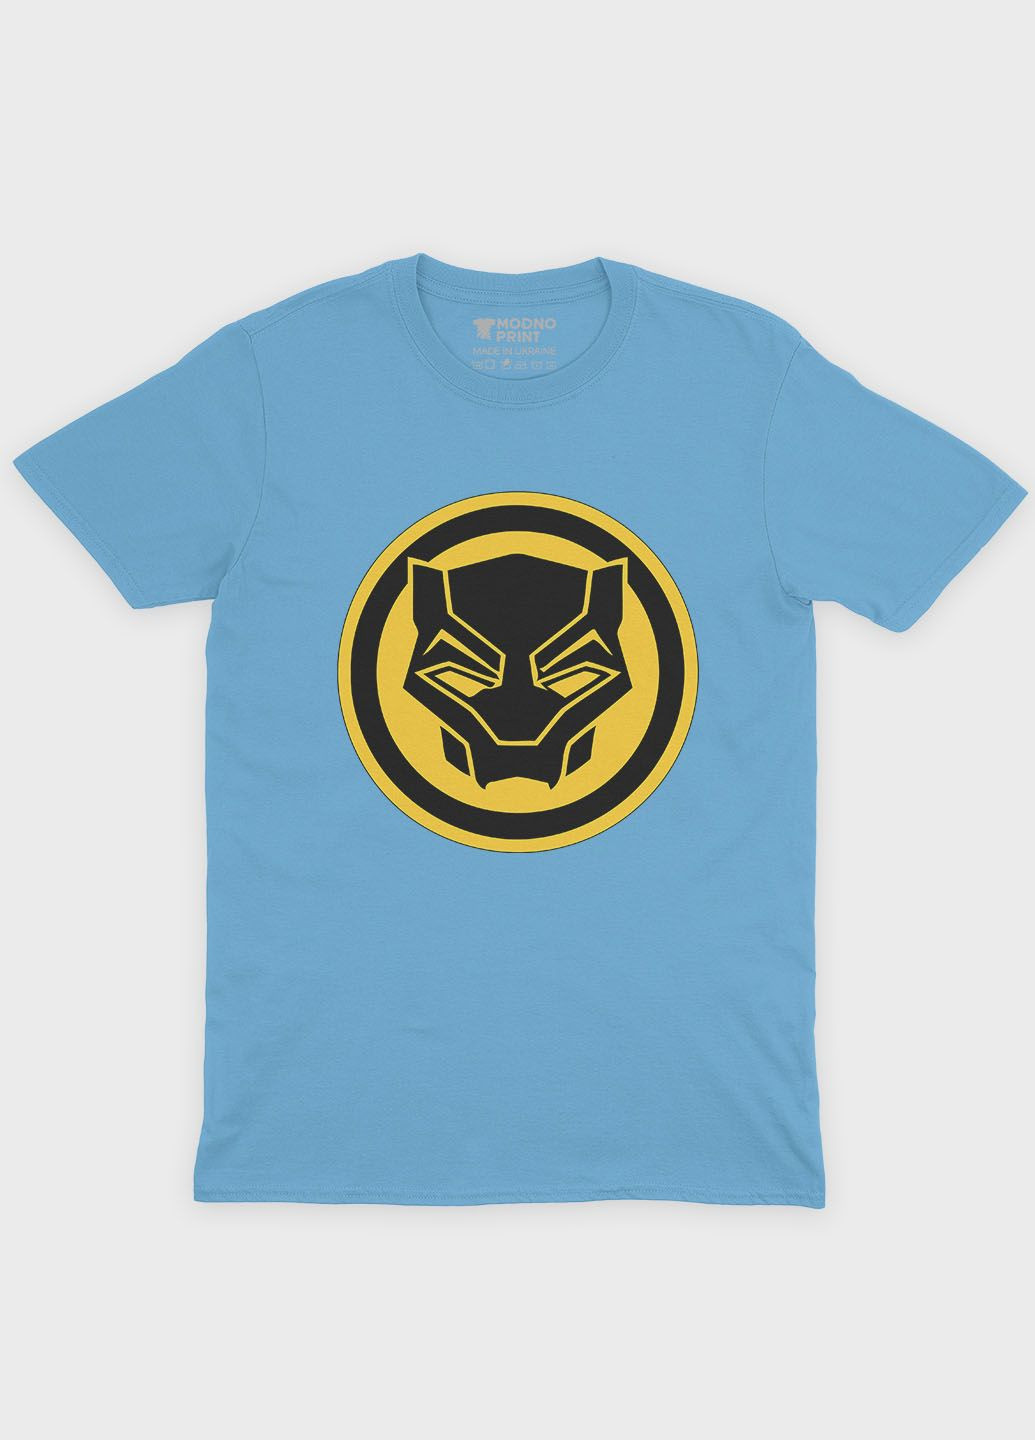 Блакитна демісезонна футболка для хлопчика з принтом супергероя - чорна пантера (ts001-1-lbl-006-027-004-b) Modno